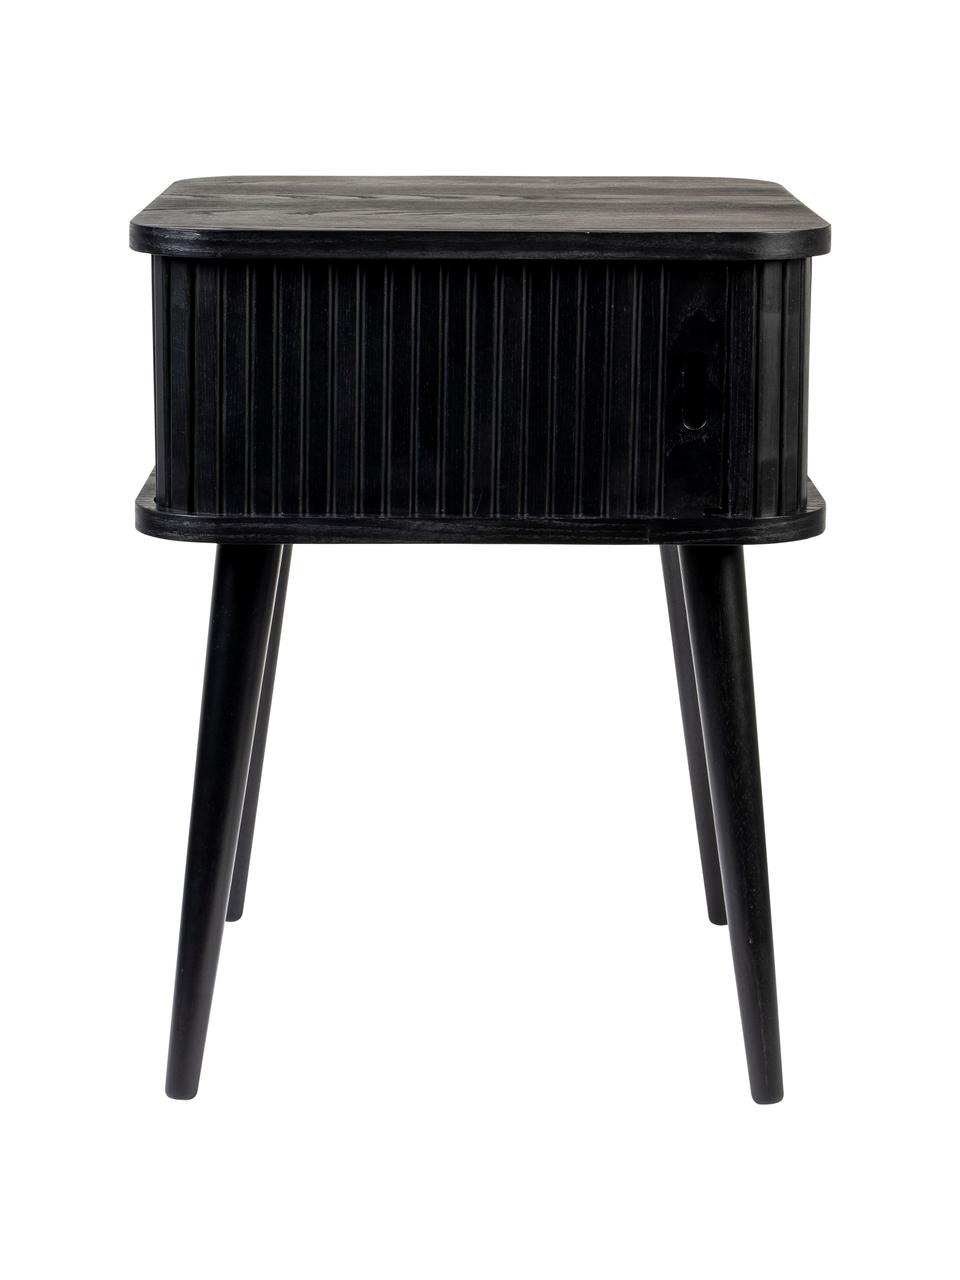 Holz-Nachttisch Barbier mit Schiebetür und geriffelter Front in Schwarz, Tischplatte: Mitteldichte Holzfaserpla, Holz, schwarz lackiert, B 45 x H 59 cm